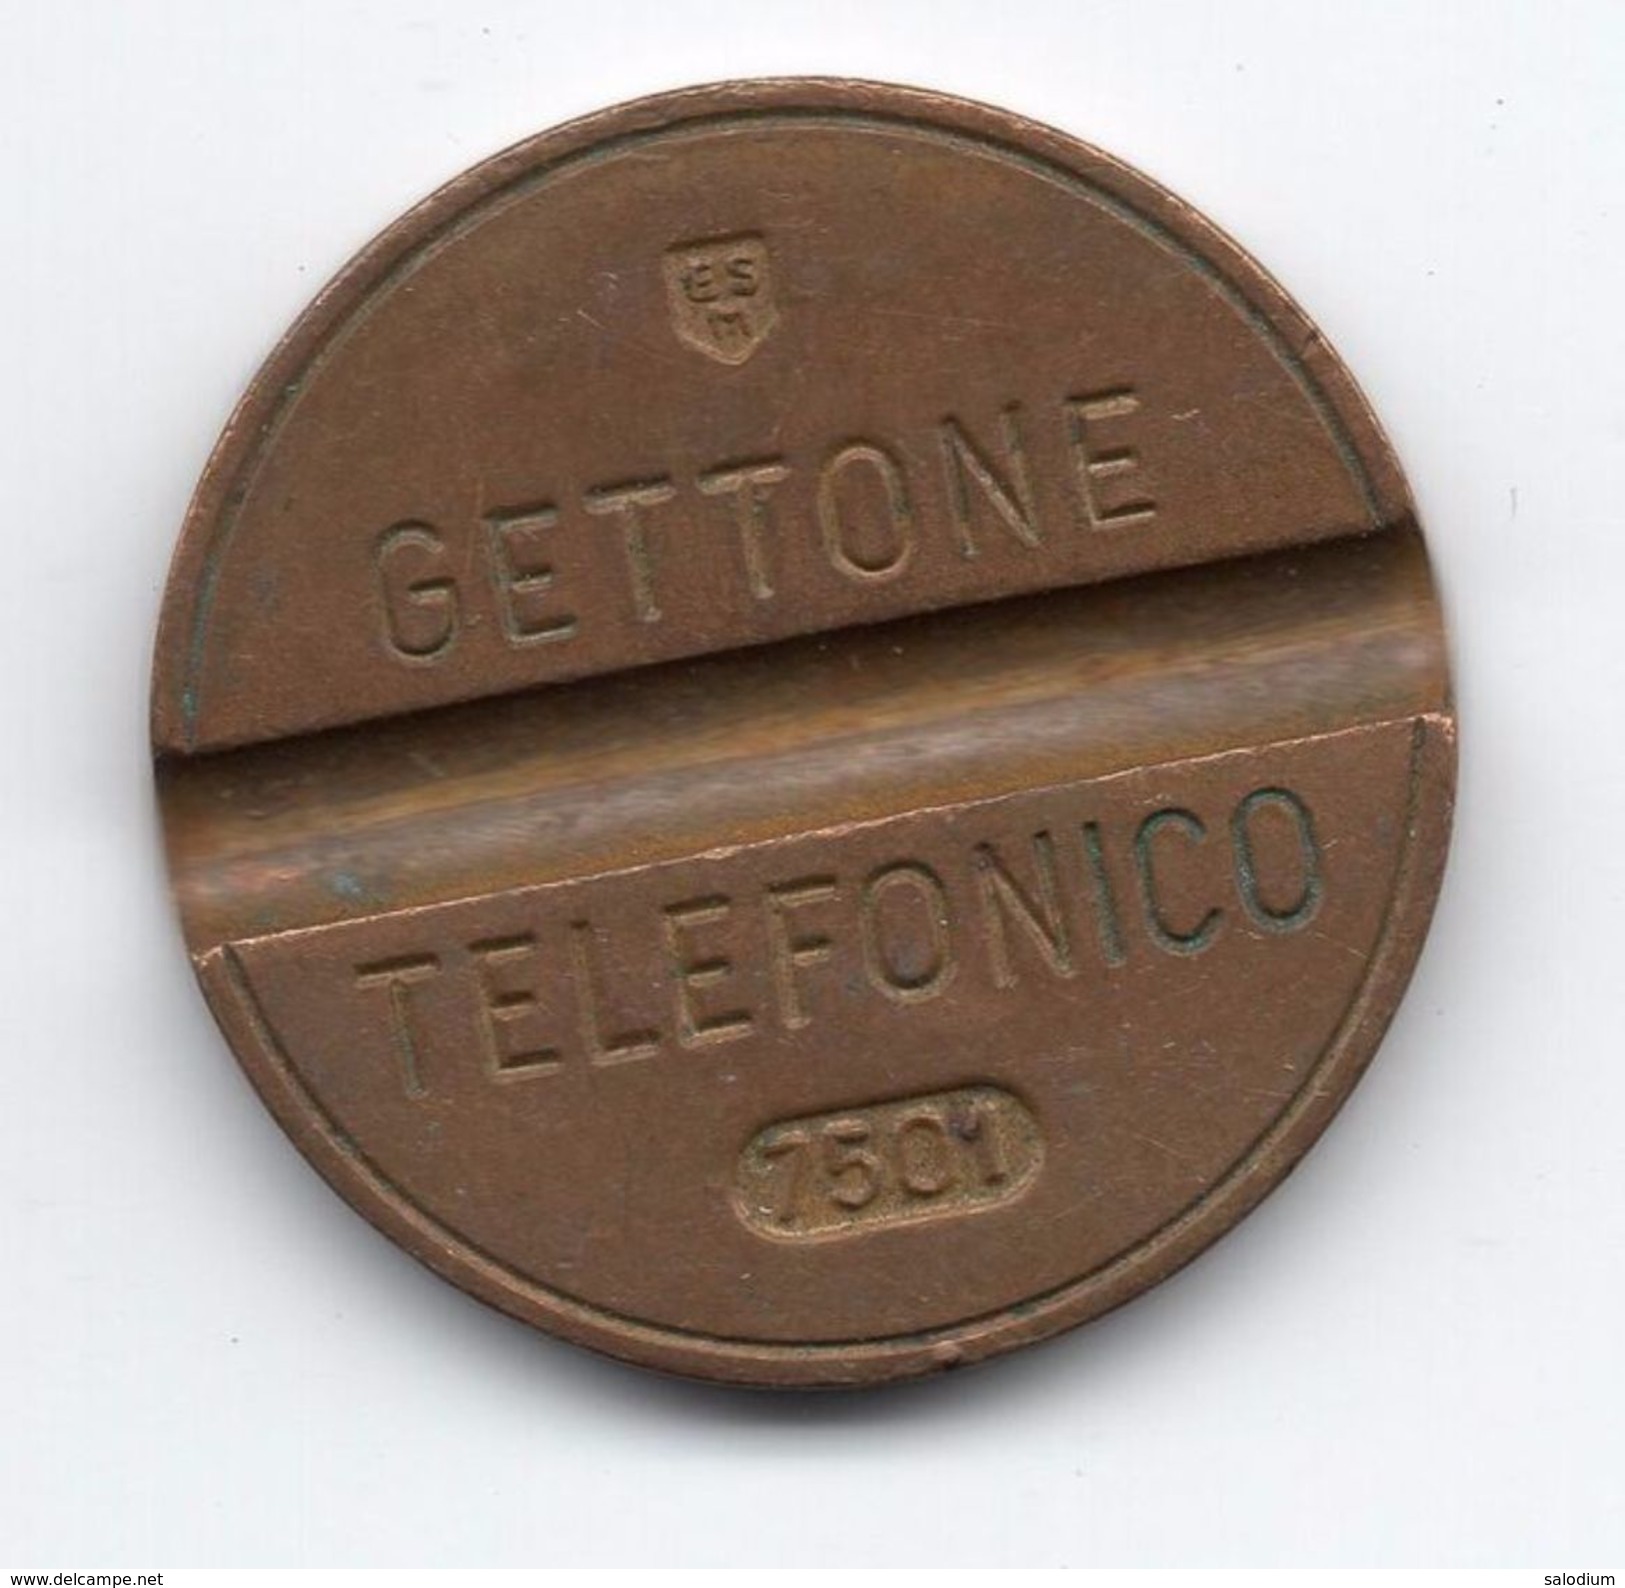 Gettone Telefonico 7501 Token Telephone - (Id-809) - Professionali/Di Società